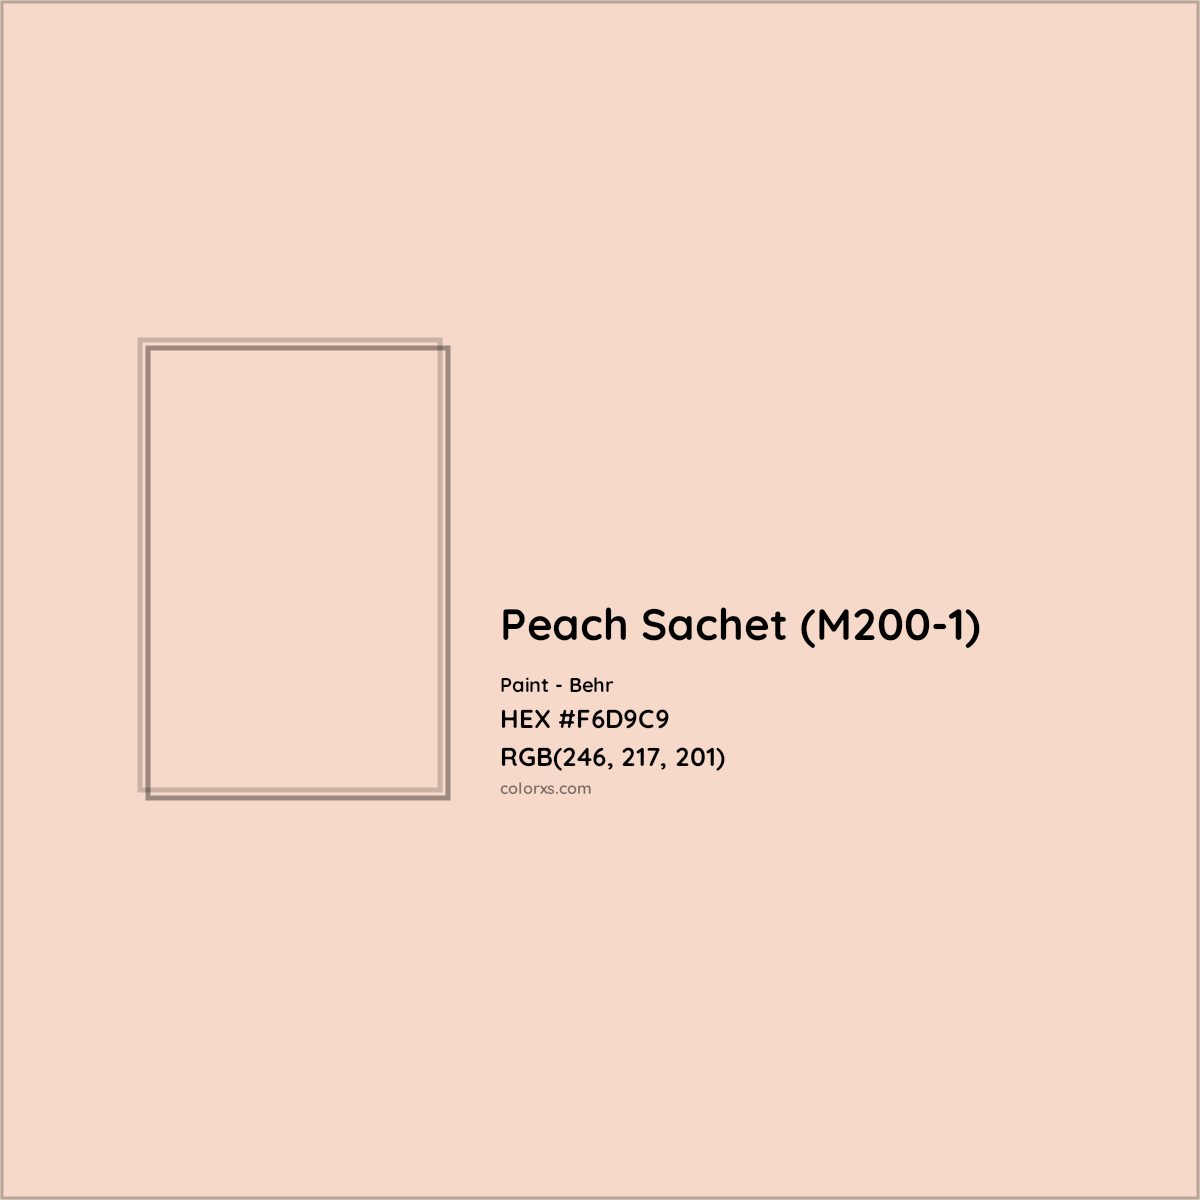 HEX #F6D9C9 Peach Sachet (M200-1) Paint Behr - Color Code